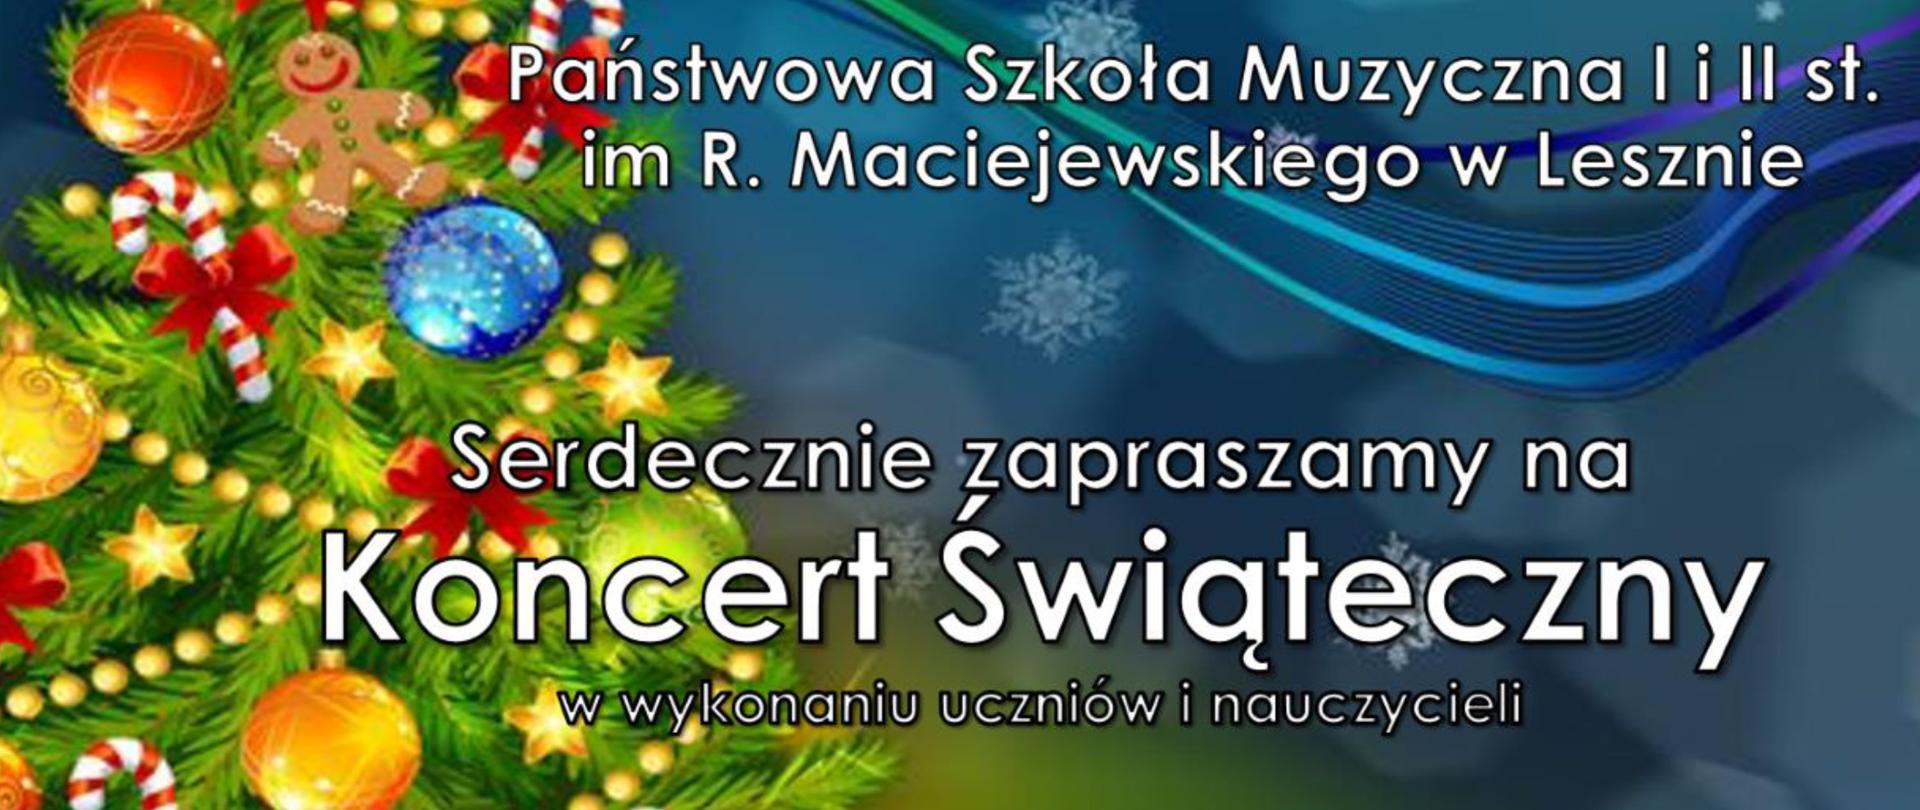 Plakat z białym napisem Koncert świąteczny na kolorowym tle z przyozdobioną choinką po lewej stronie.